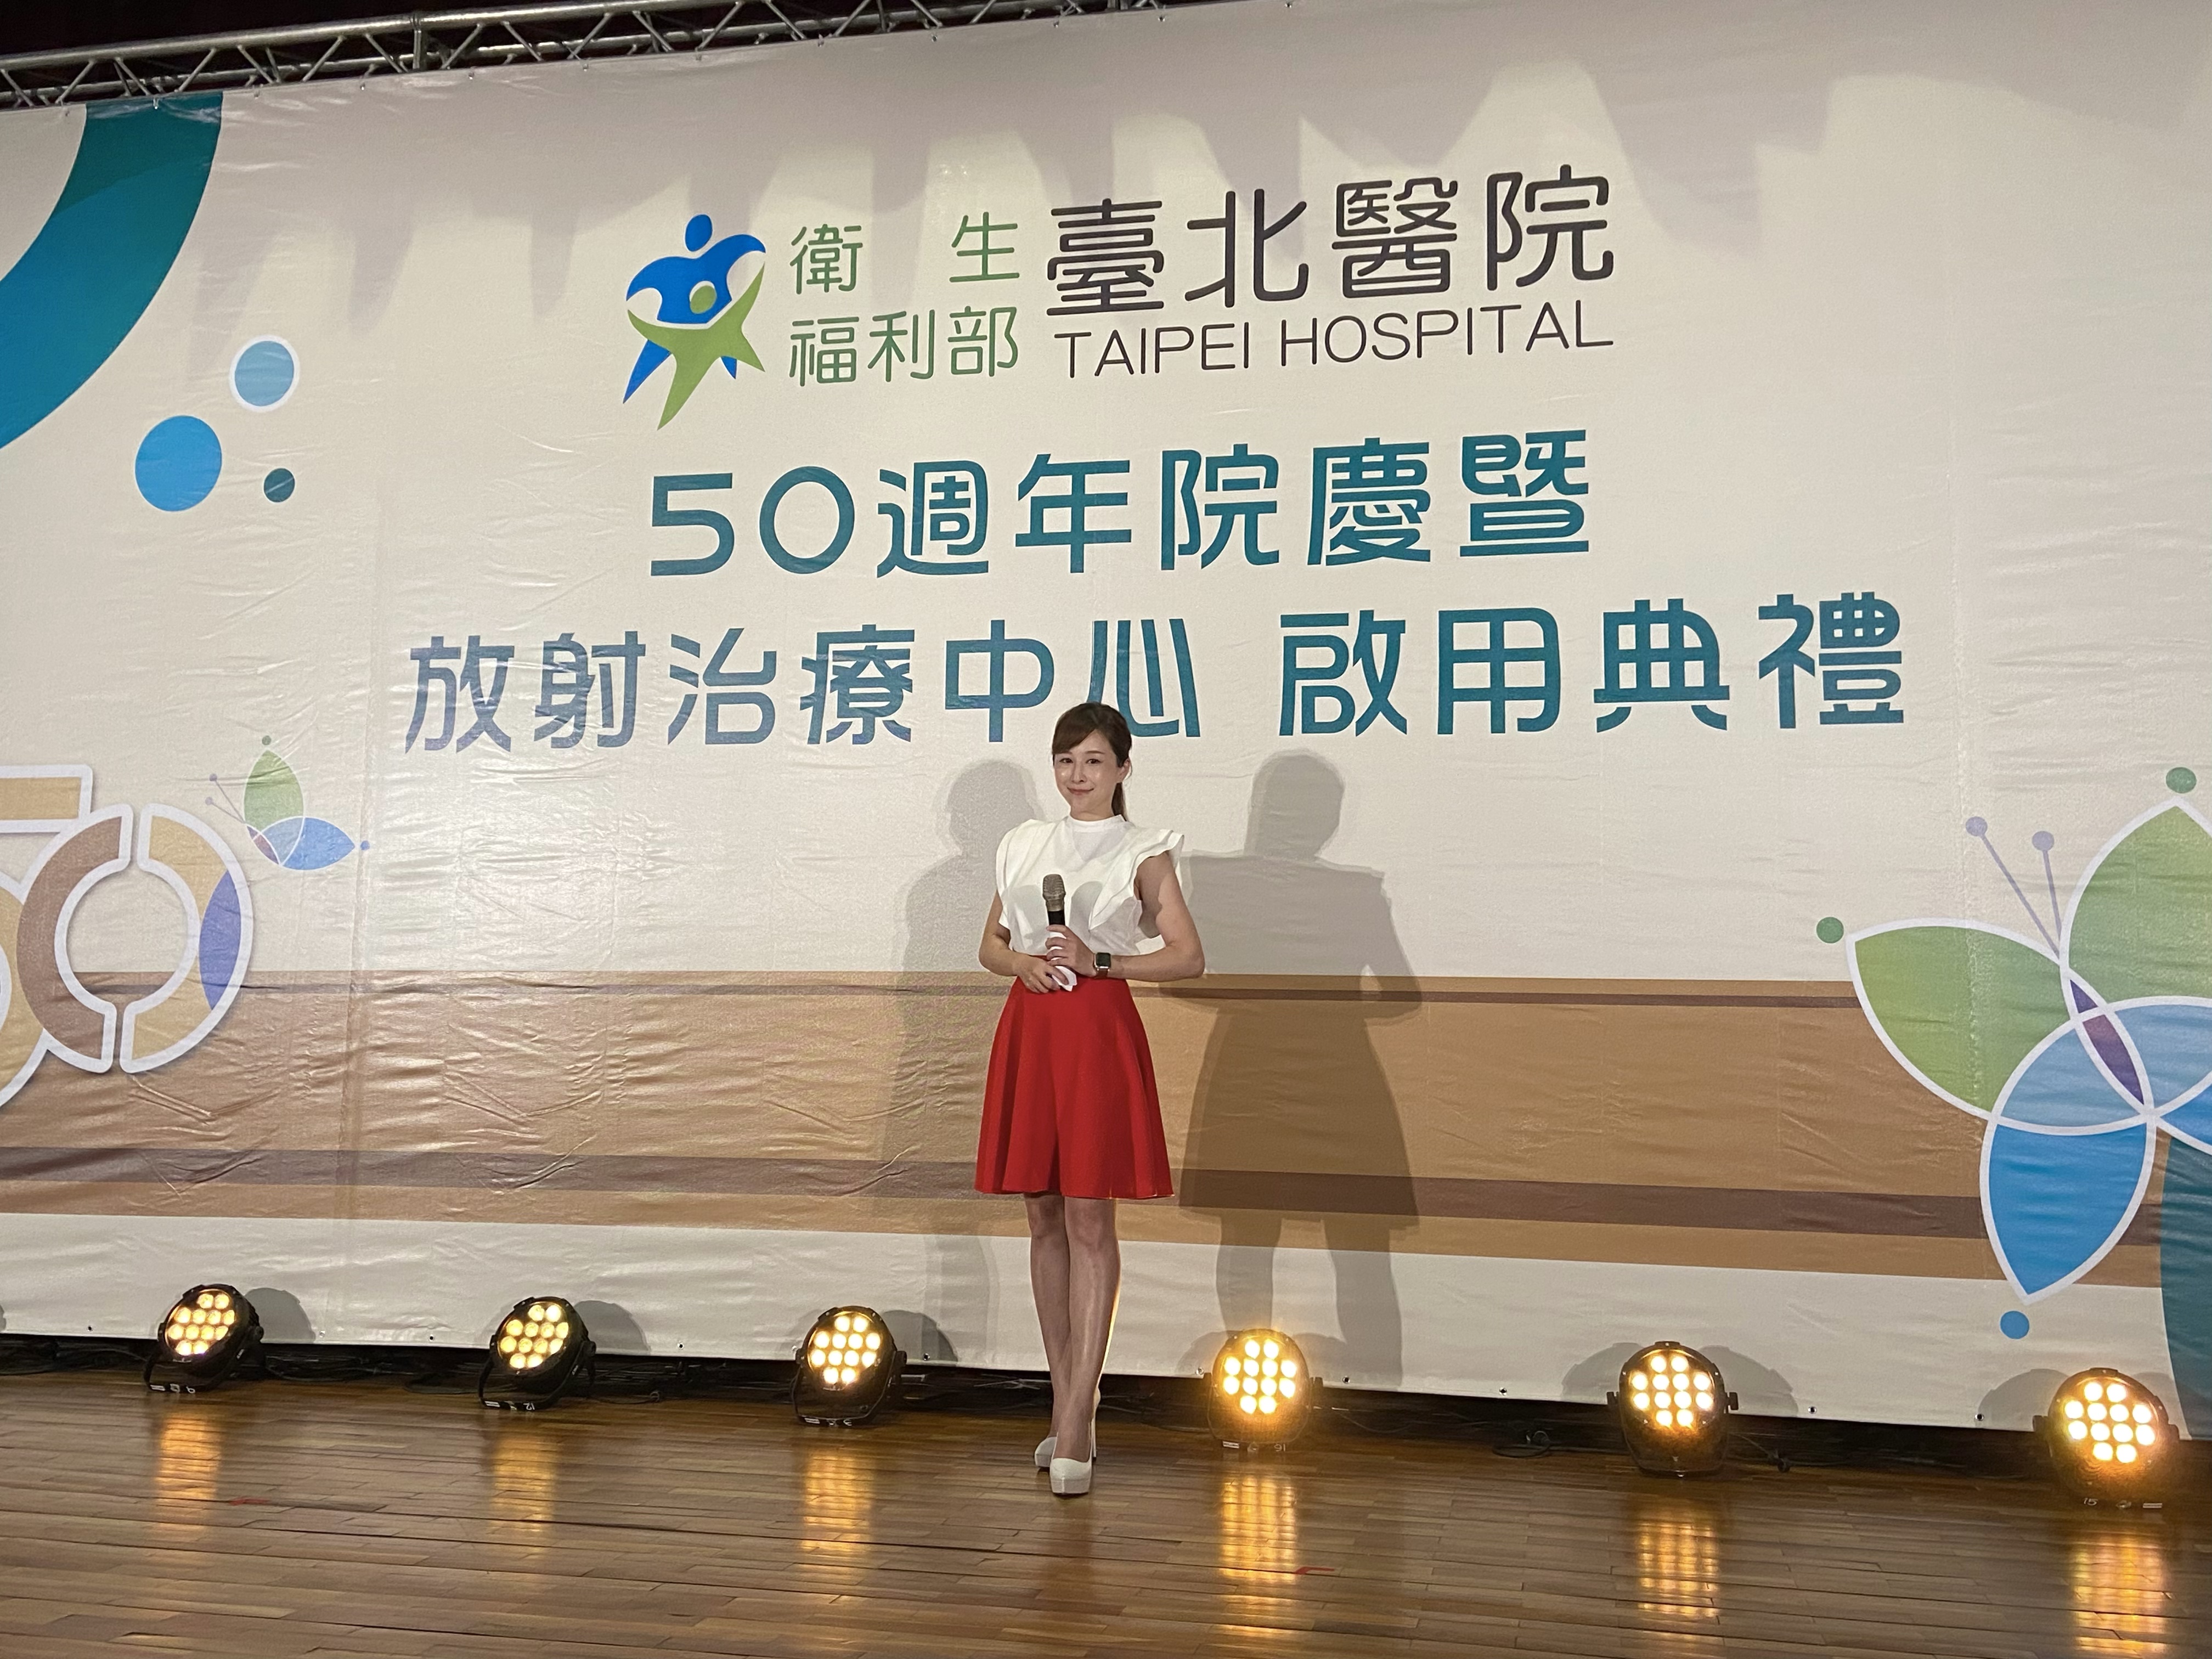 專業主持人怡沛之主持人主持紀錄: 台北醫院50週年院慶活動主持人